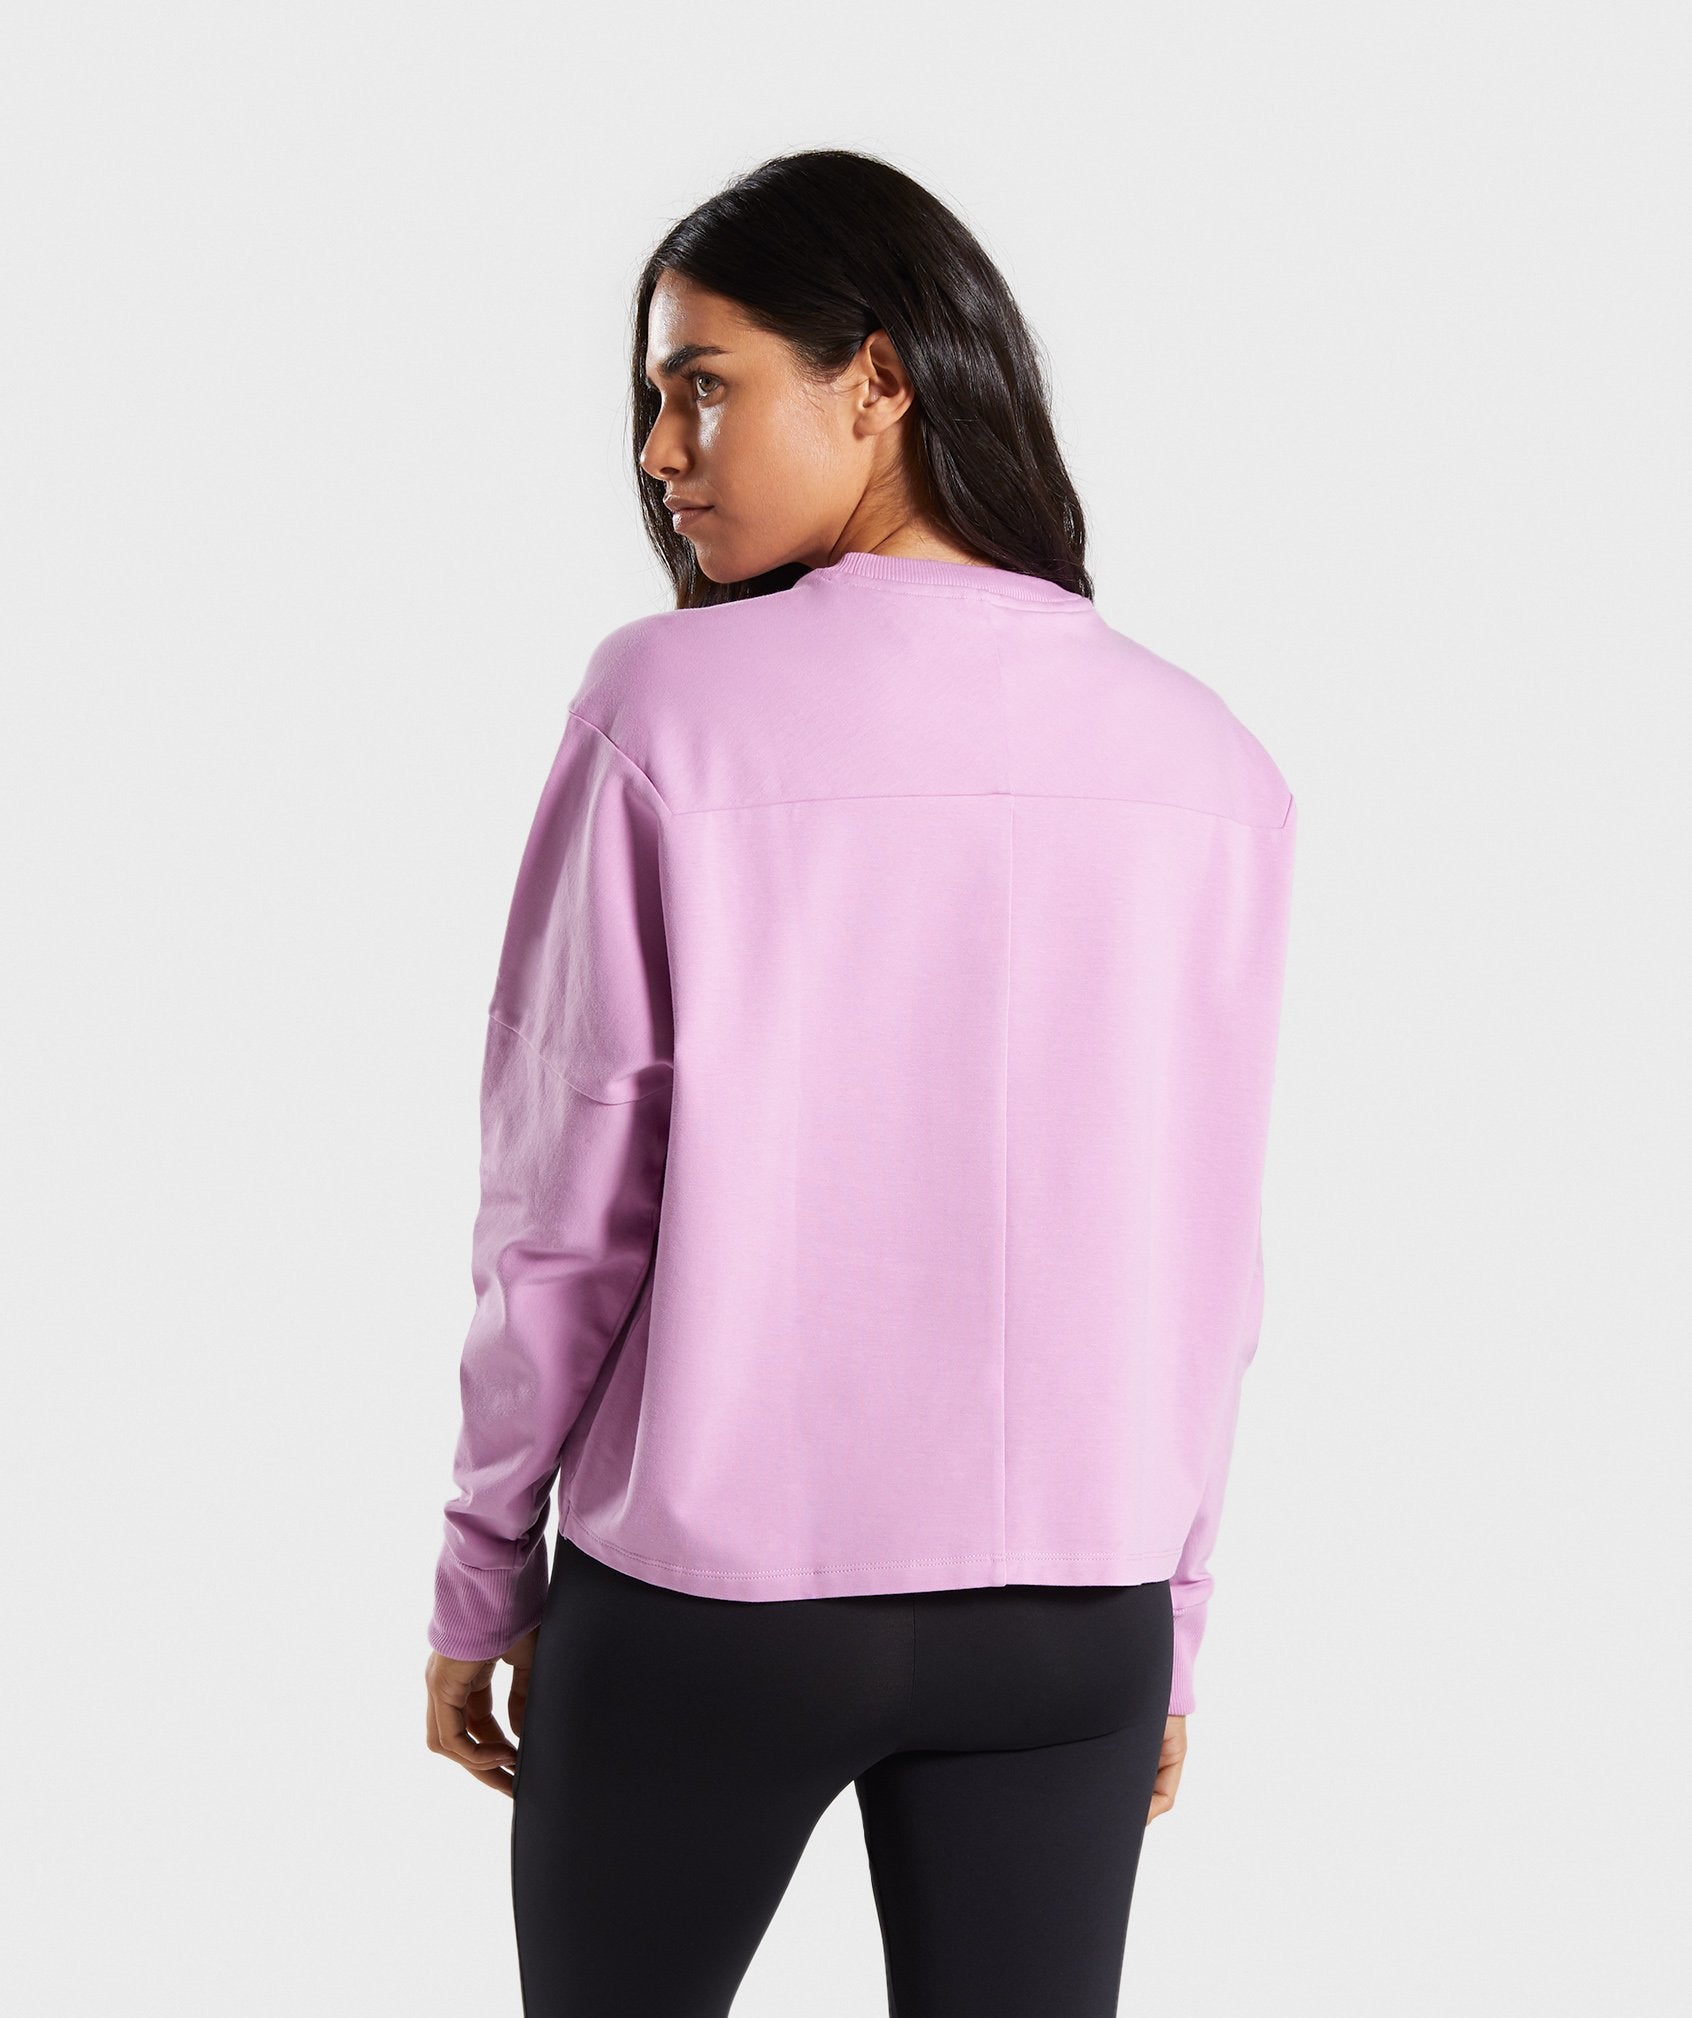 Ori Sweater in Pink - view 2